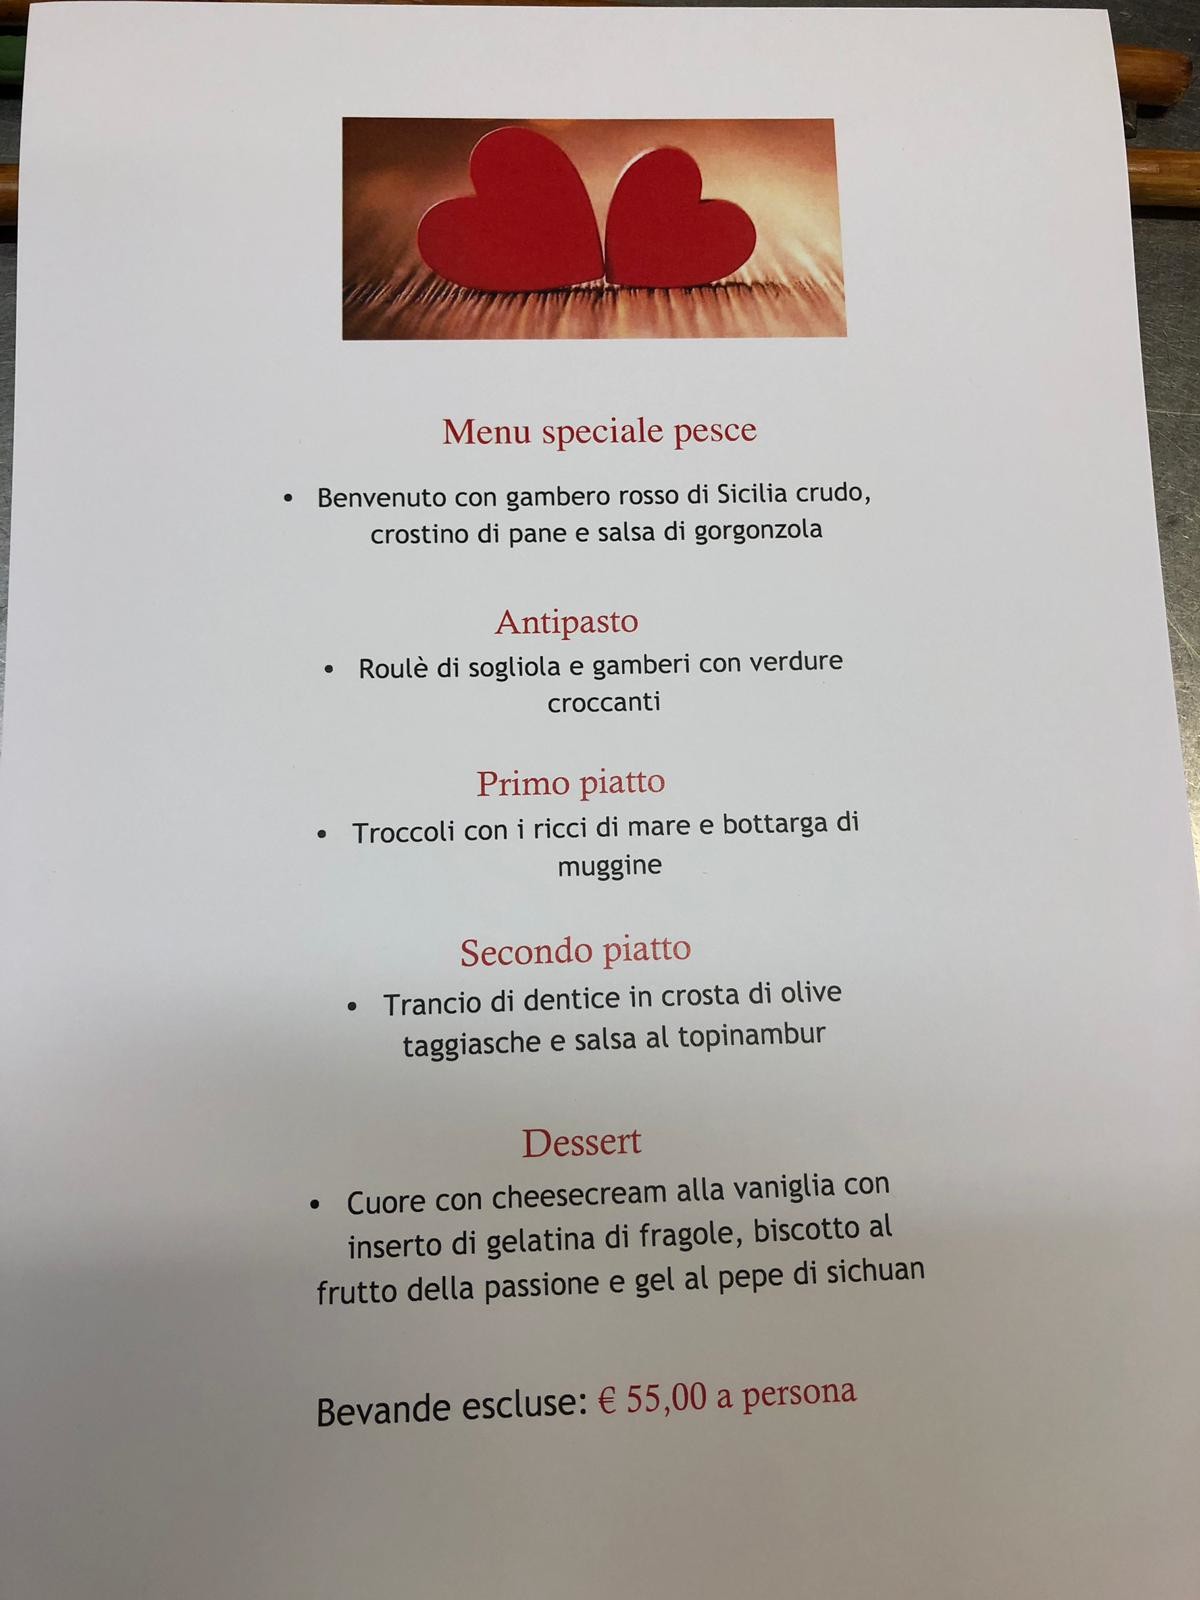 San Valentino al ristorante "La forchetta"